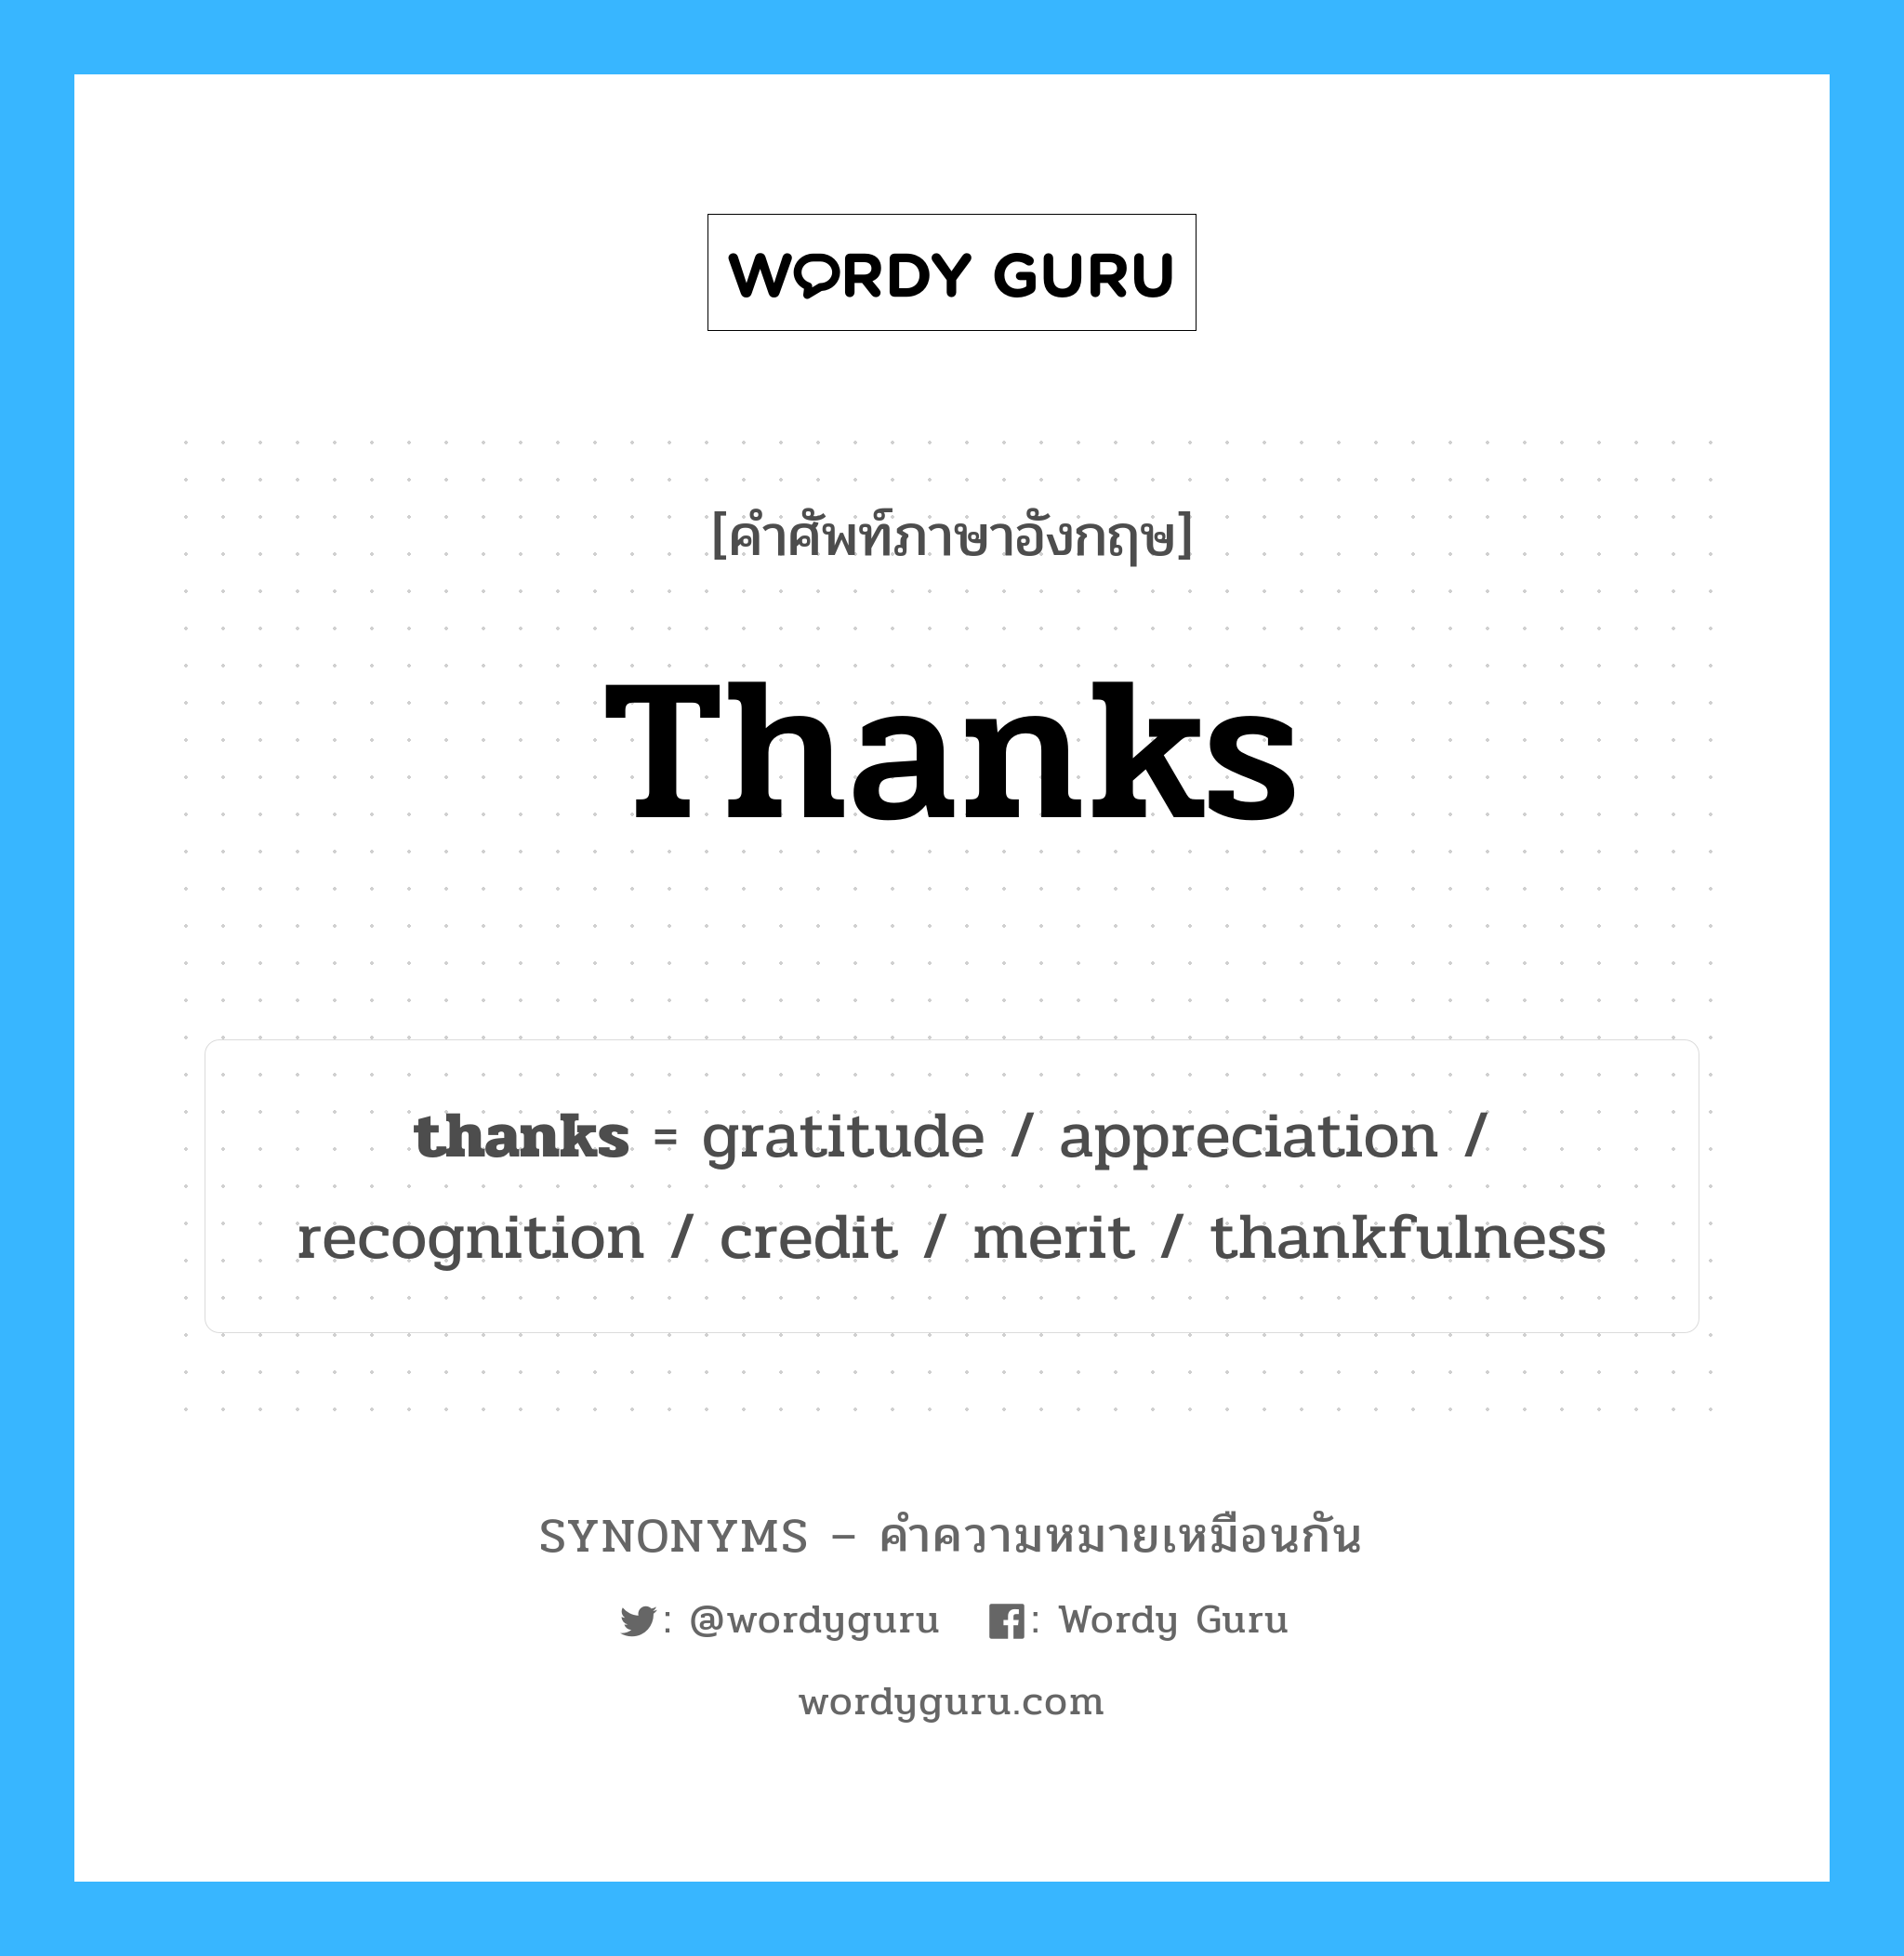 gratitude เป็นหนึ่งใน thanks และมีคำอื่น ๆ อีกดังนี้, คำศัพท์ภาษาอังกฤษ gratitude ความหมายคล้ายกันกับ thanks แปลว่า ความกตัญญู หมวด thanks